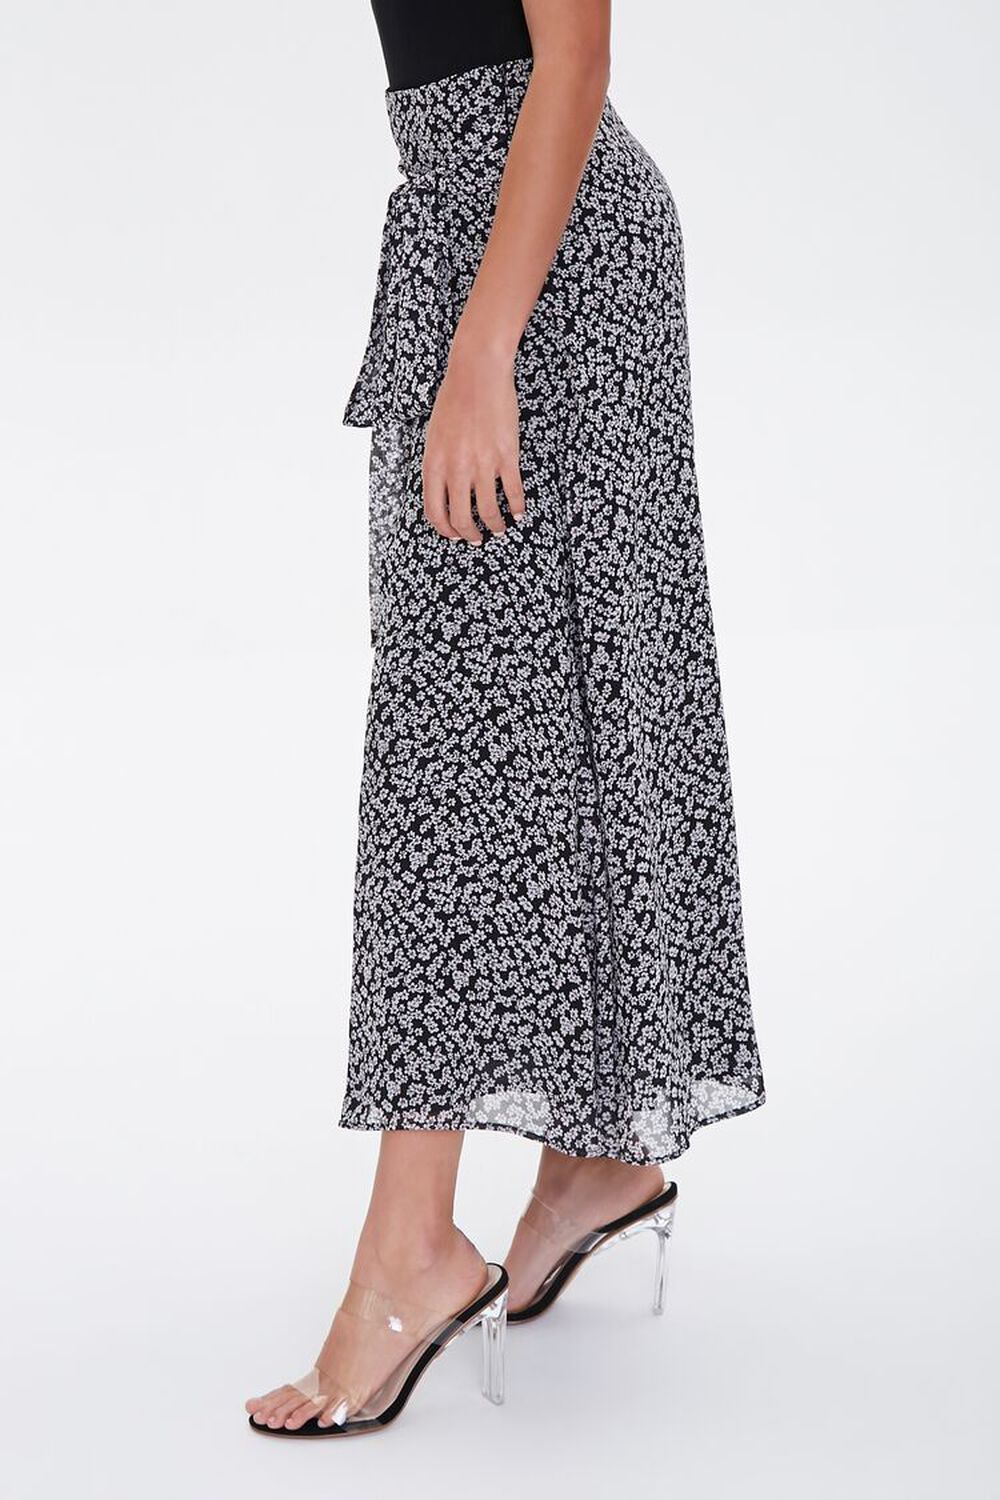 BLACK/MULTI Floral Tie-Waist Midi Skirt, image 2